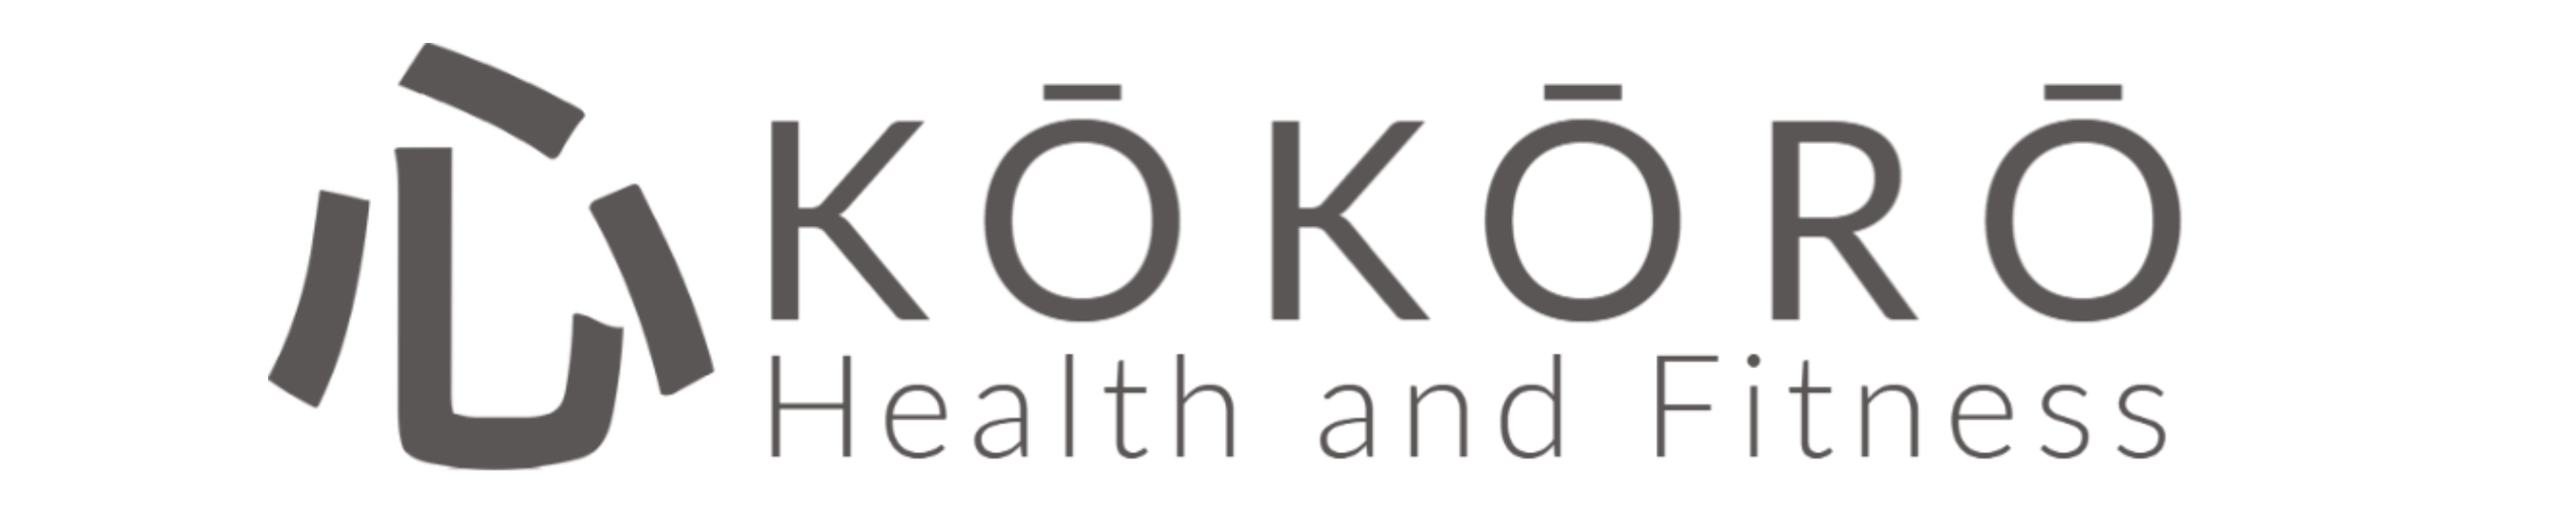 Kokoro Health and Fitness logo Atlantic Beach, FL